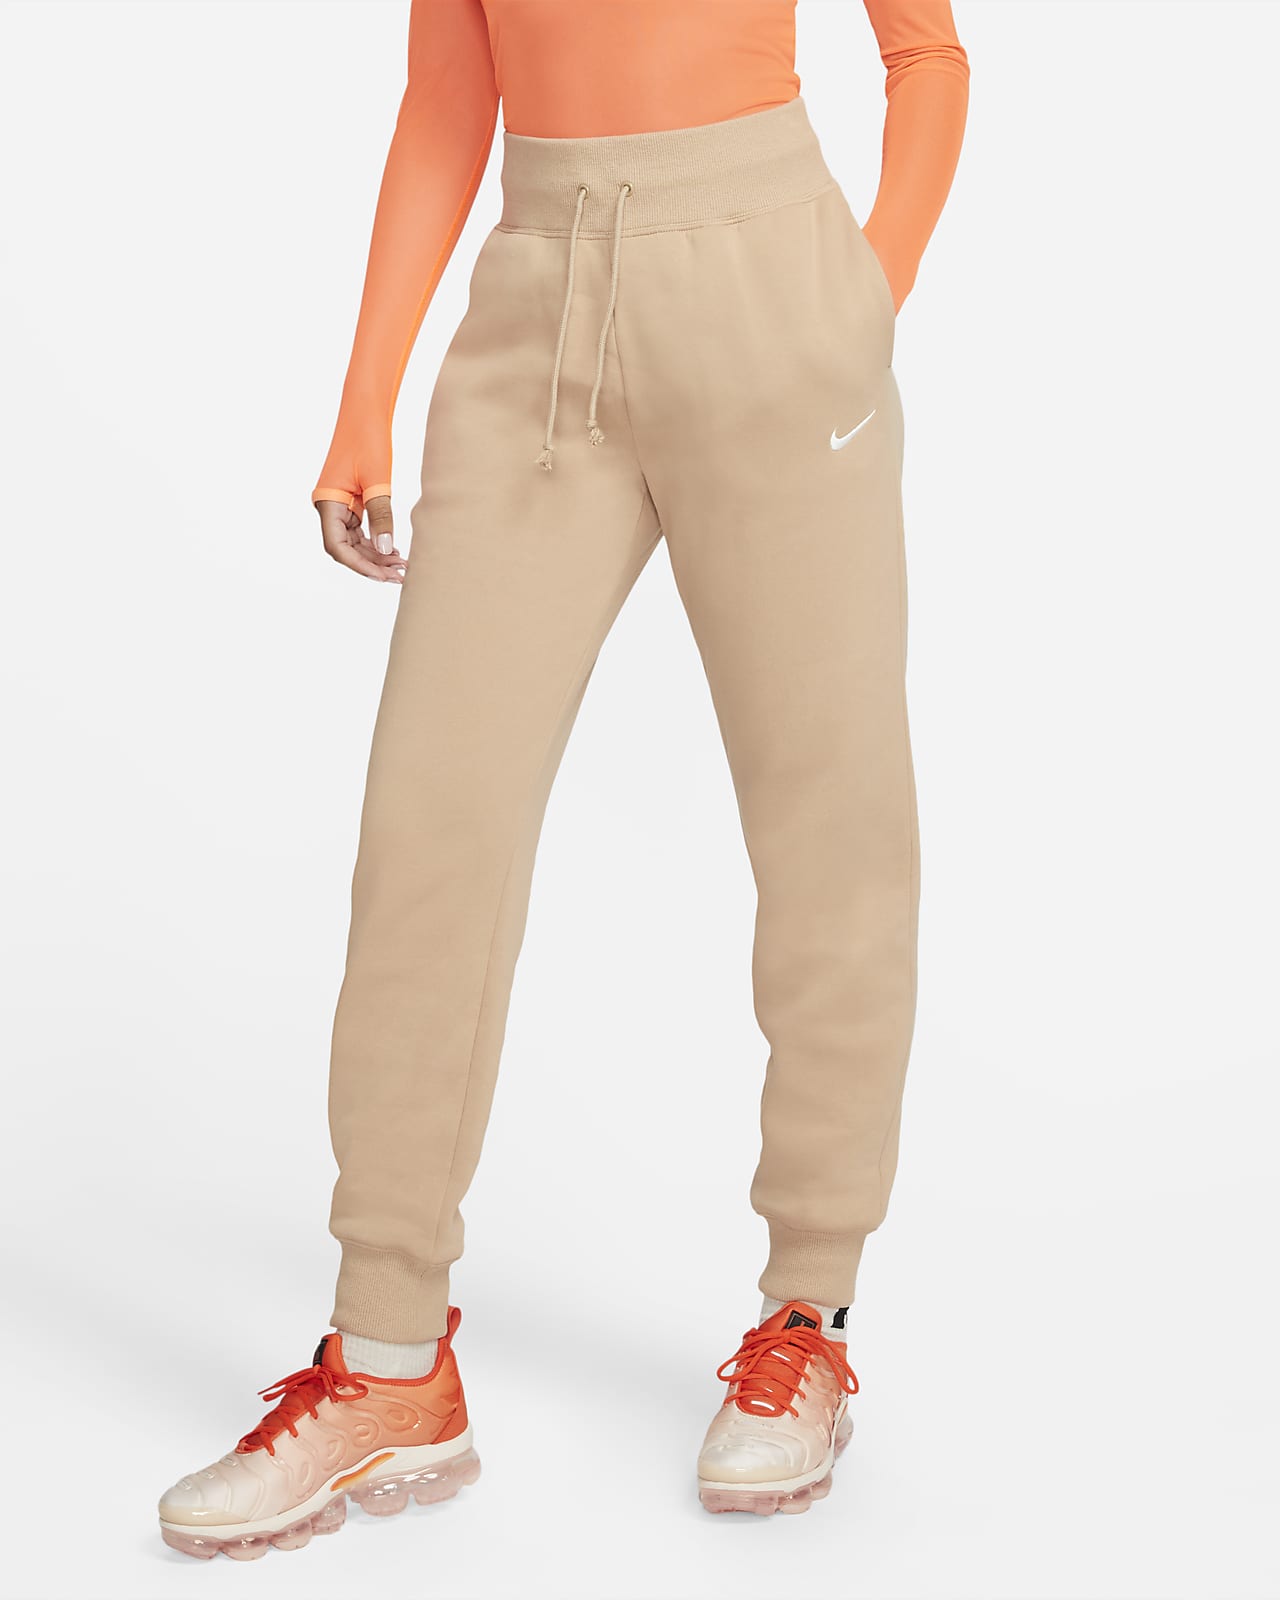 Nike Sportswear Phoenix Fleece magas derekú női szabadidőnadrág